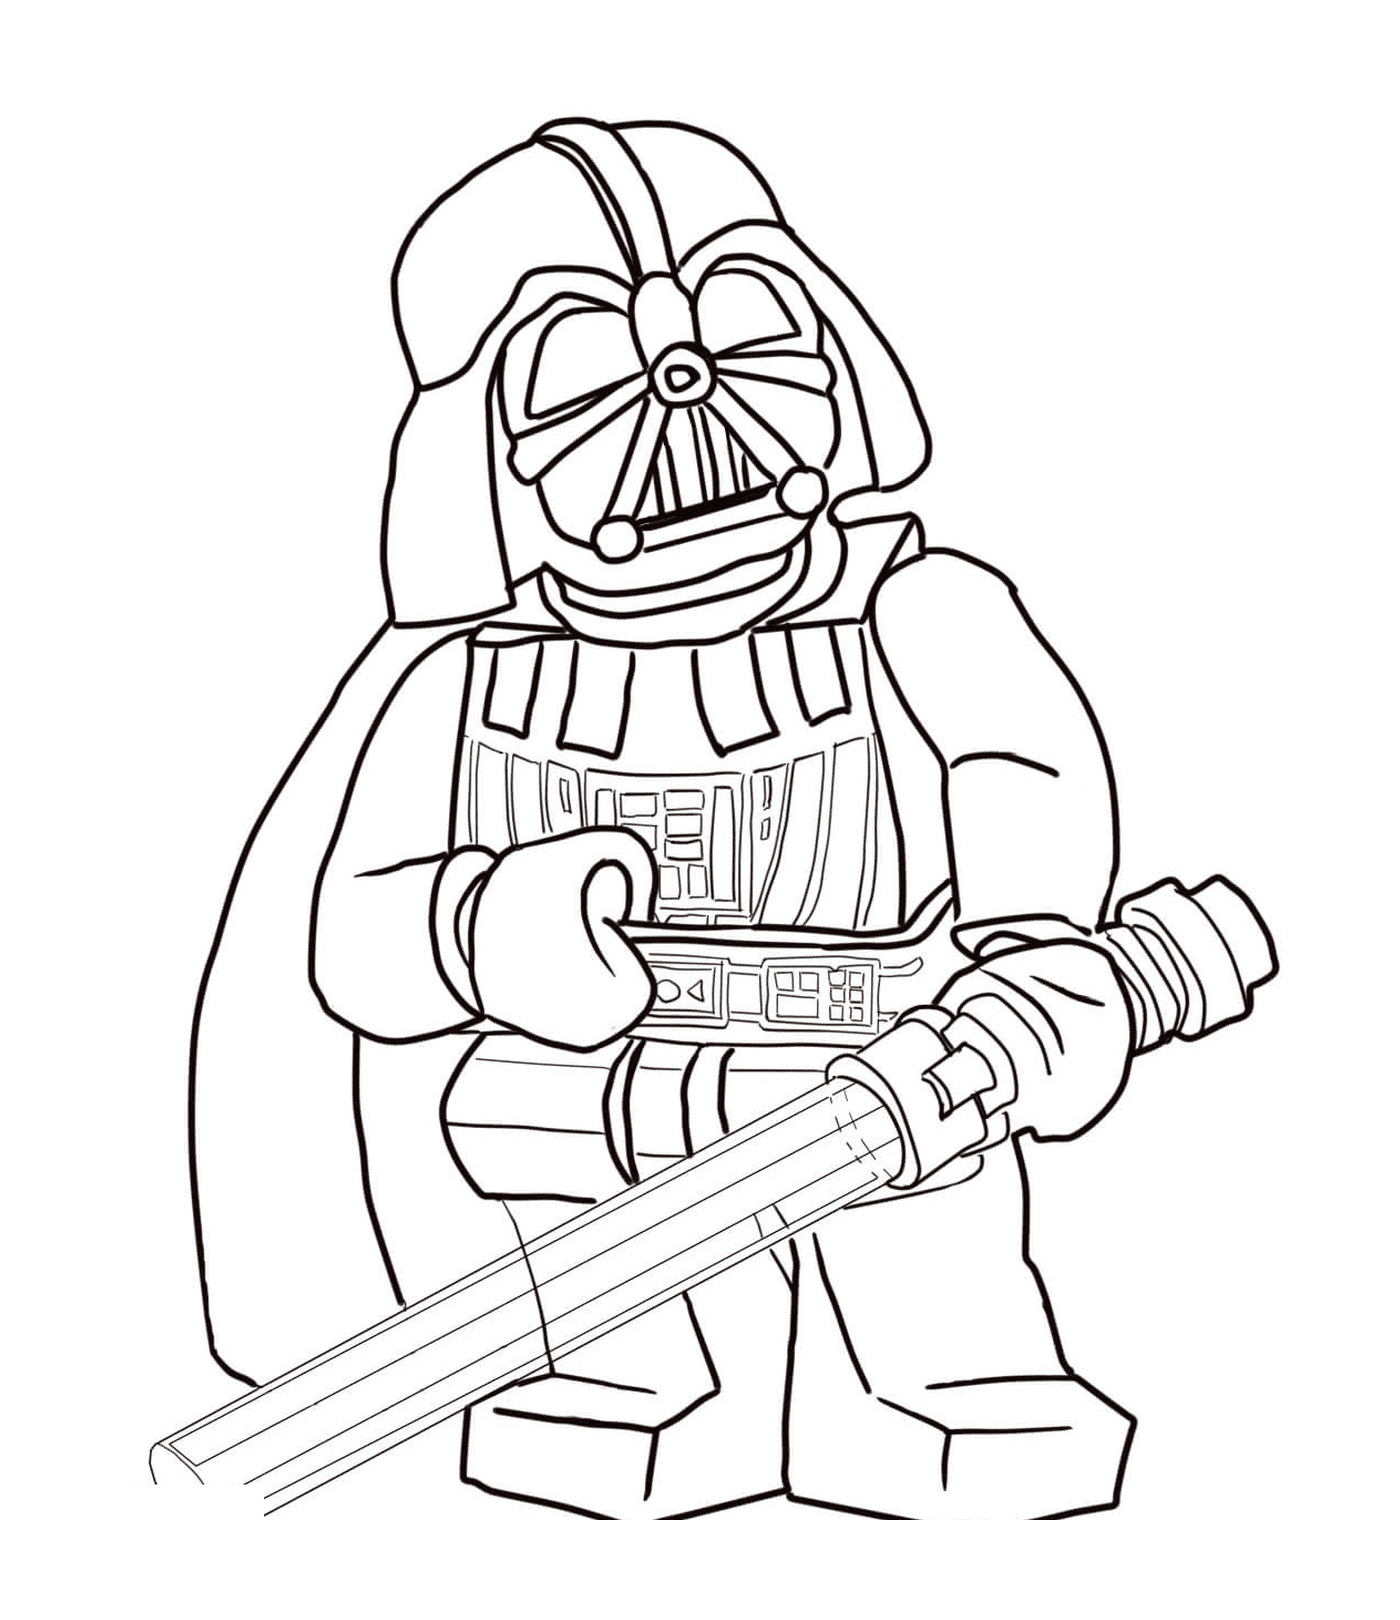  Lego Darth Vader from Star Wars 